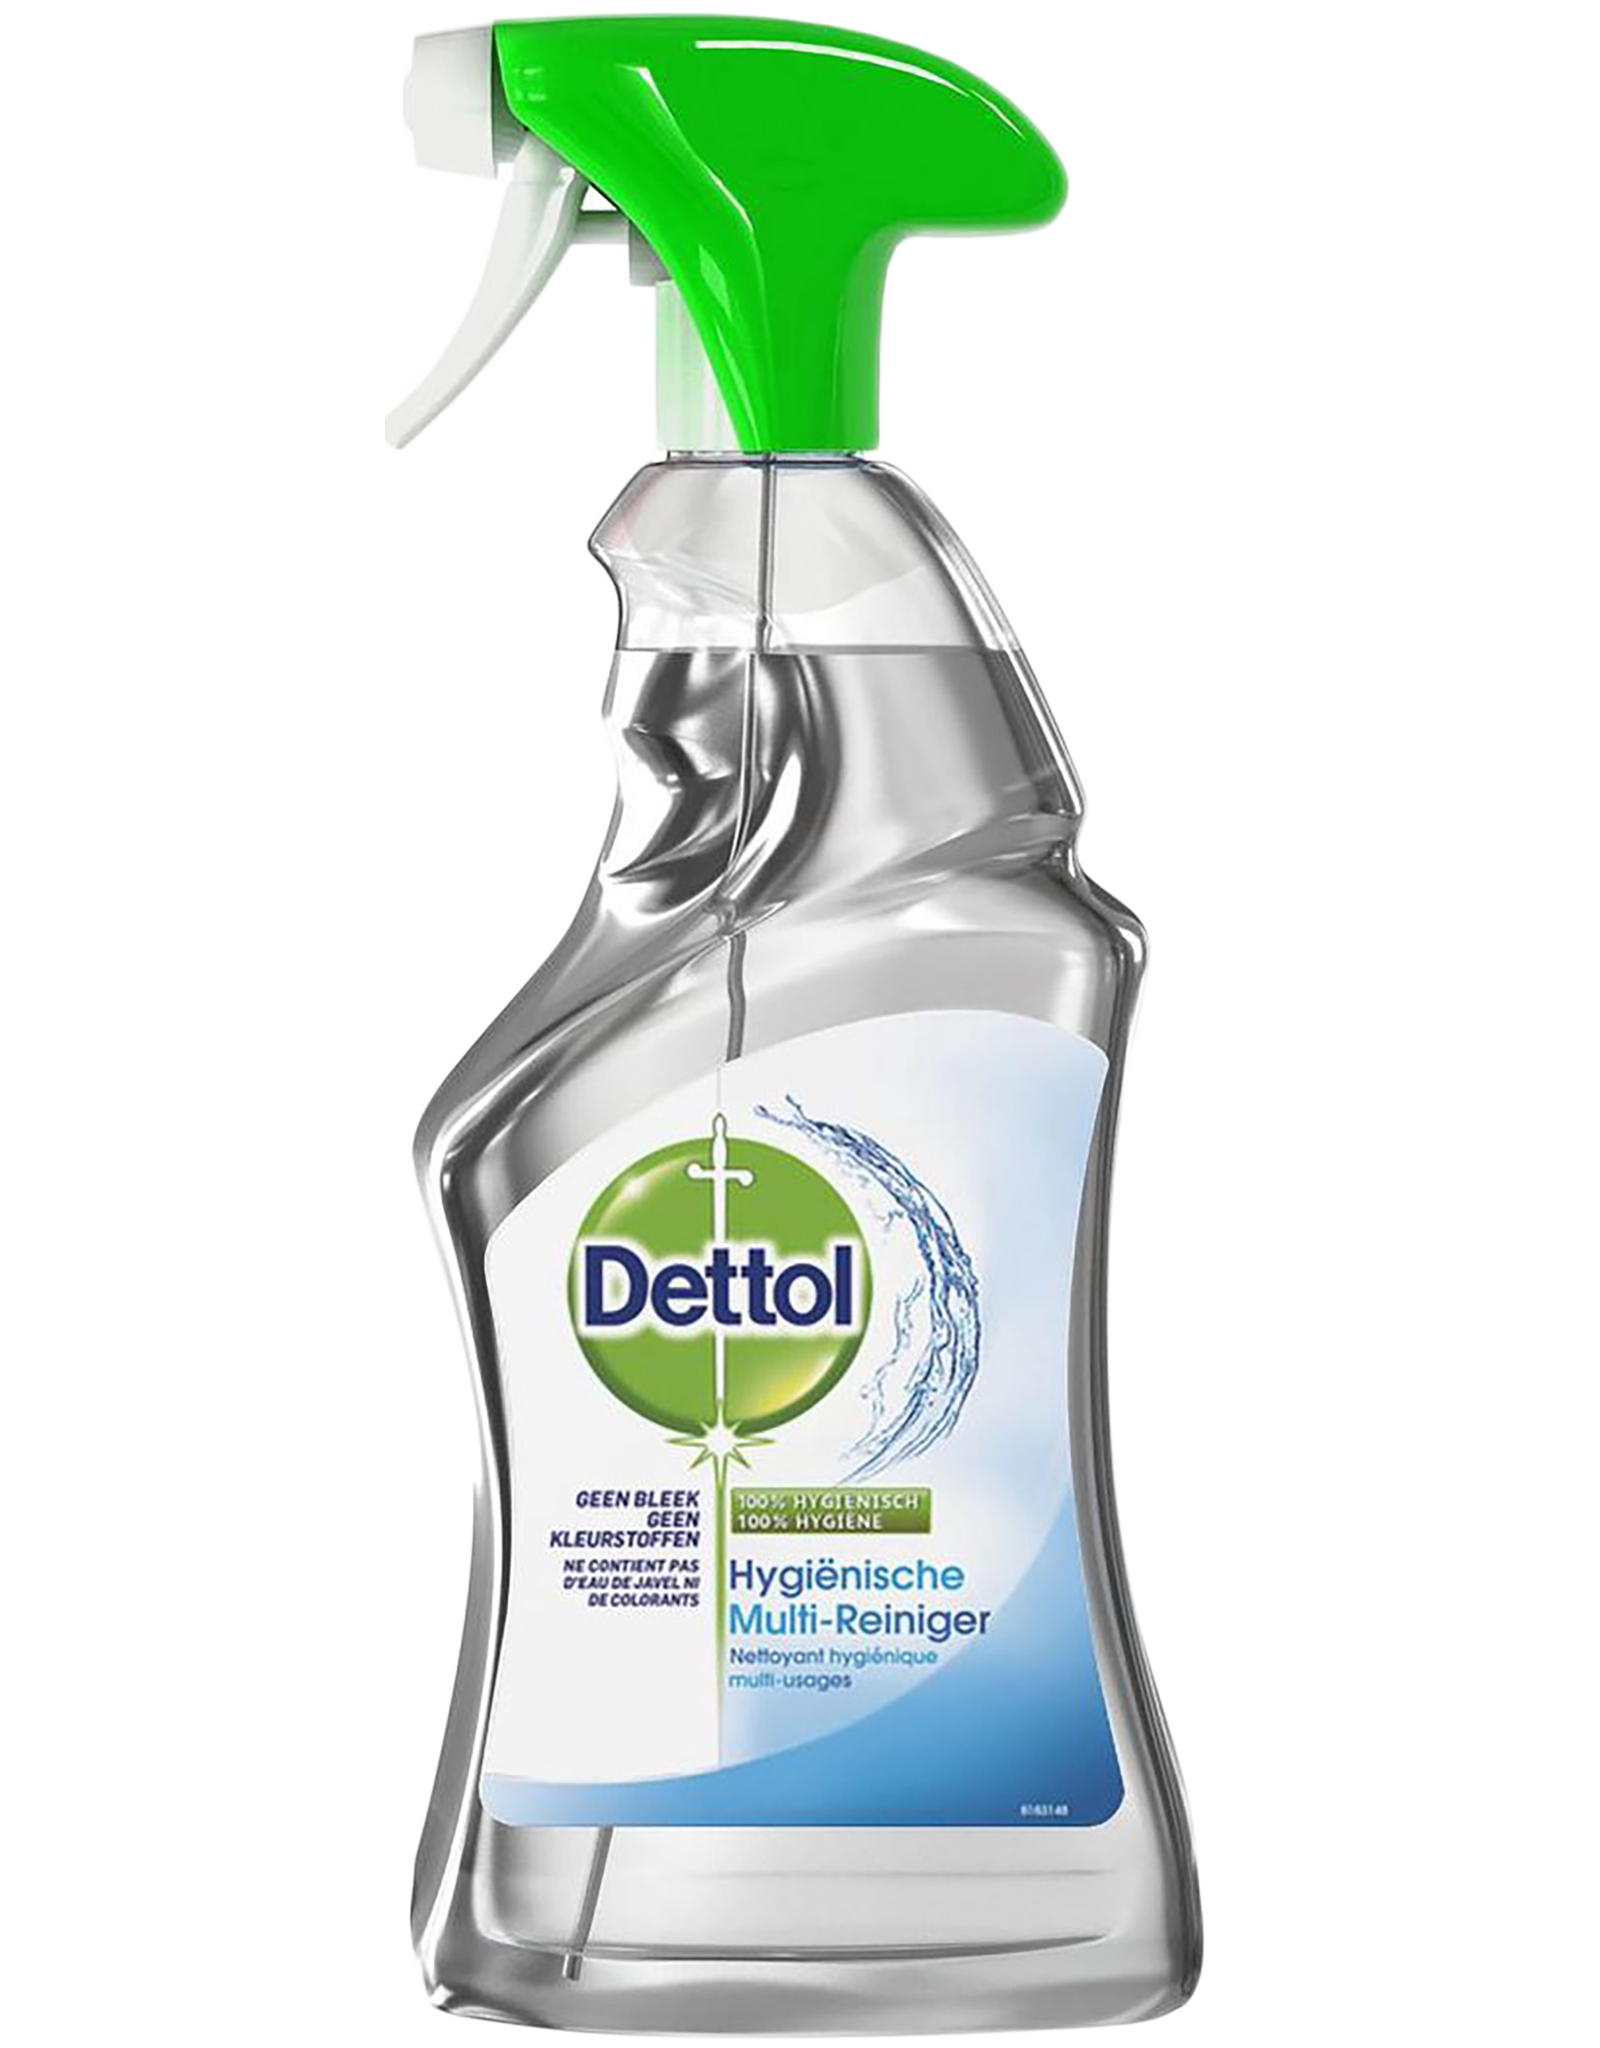 Dettol Hygiënische Multi-Reiniger Spray - Allesreiniger Spray - 500 - 123desinfectie.nl